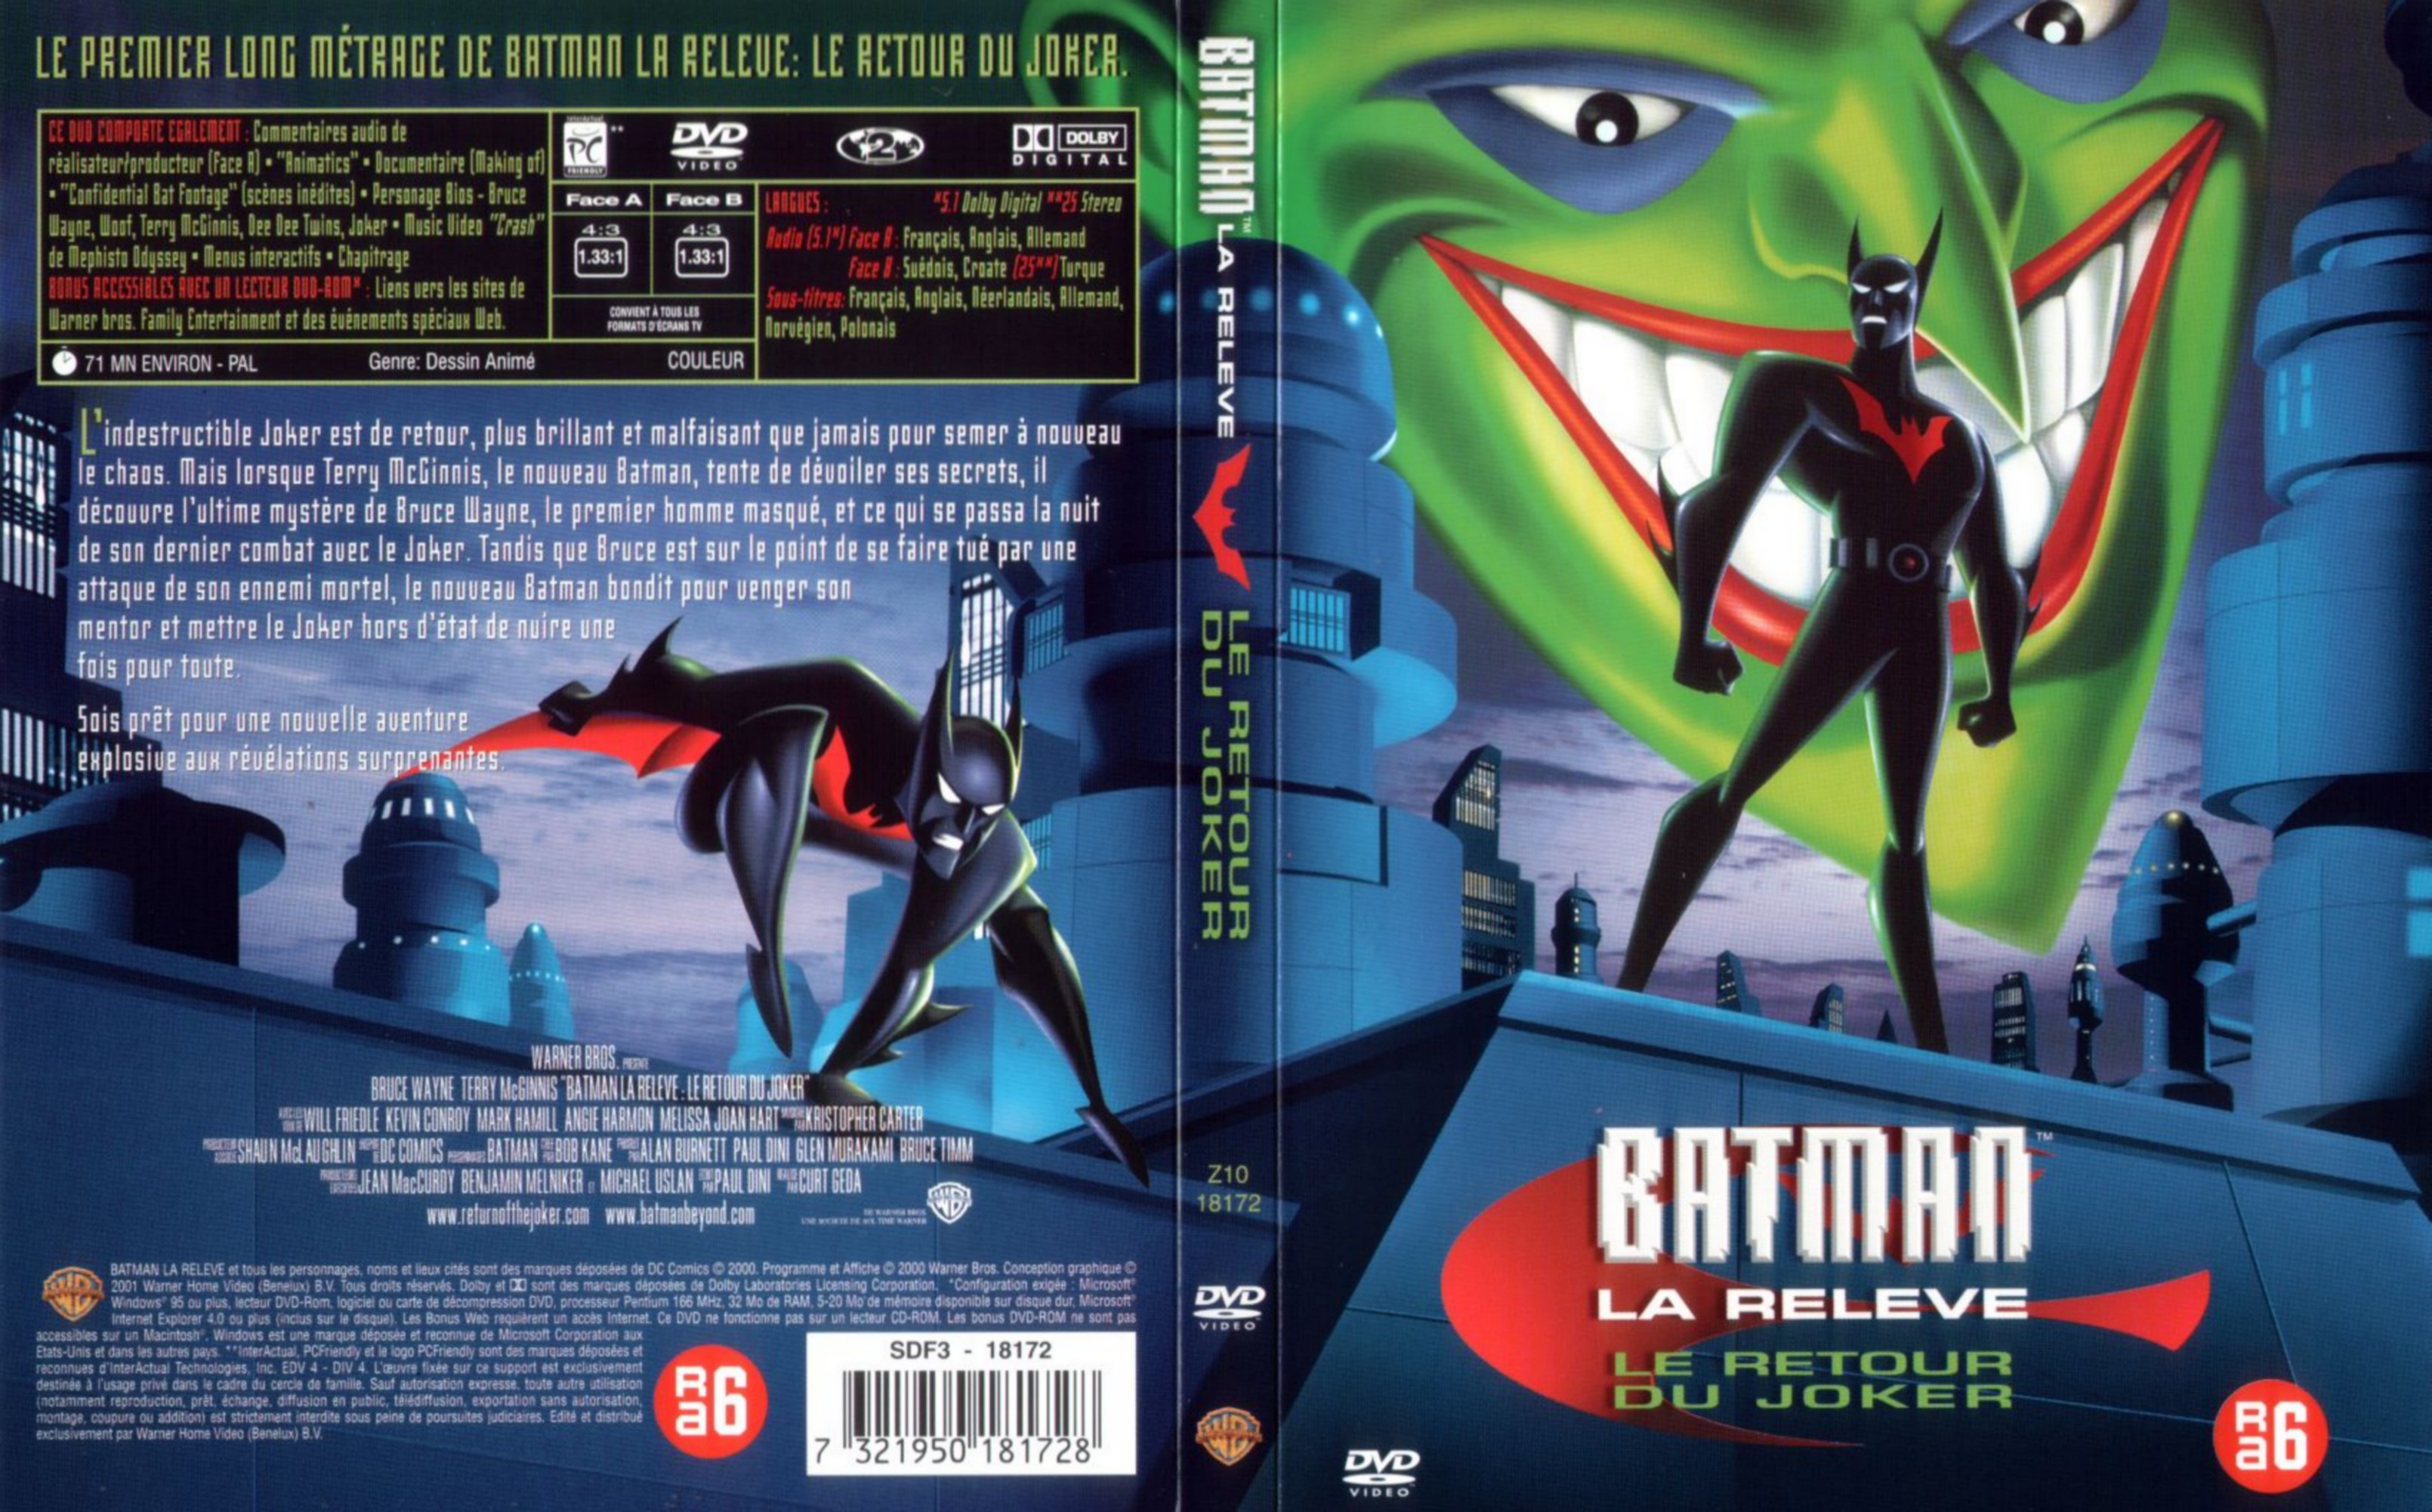 Jaquette DVD Batman la relve - Le retour de Joker